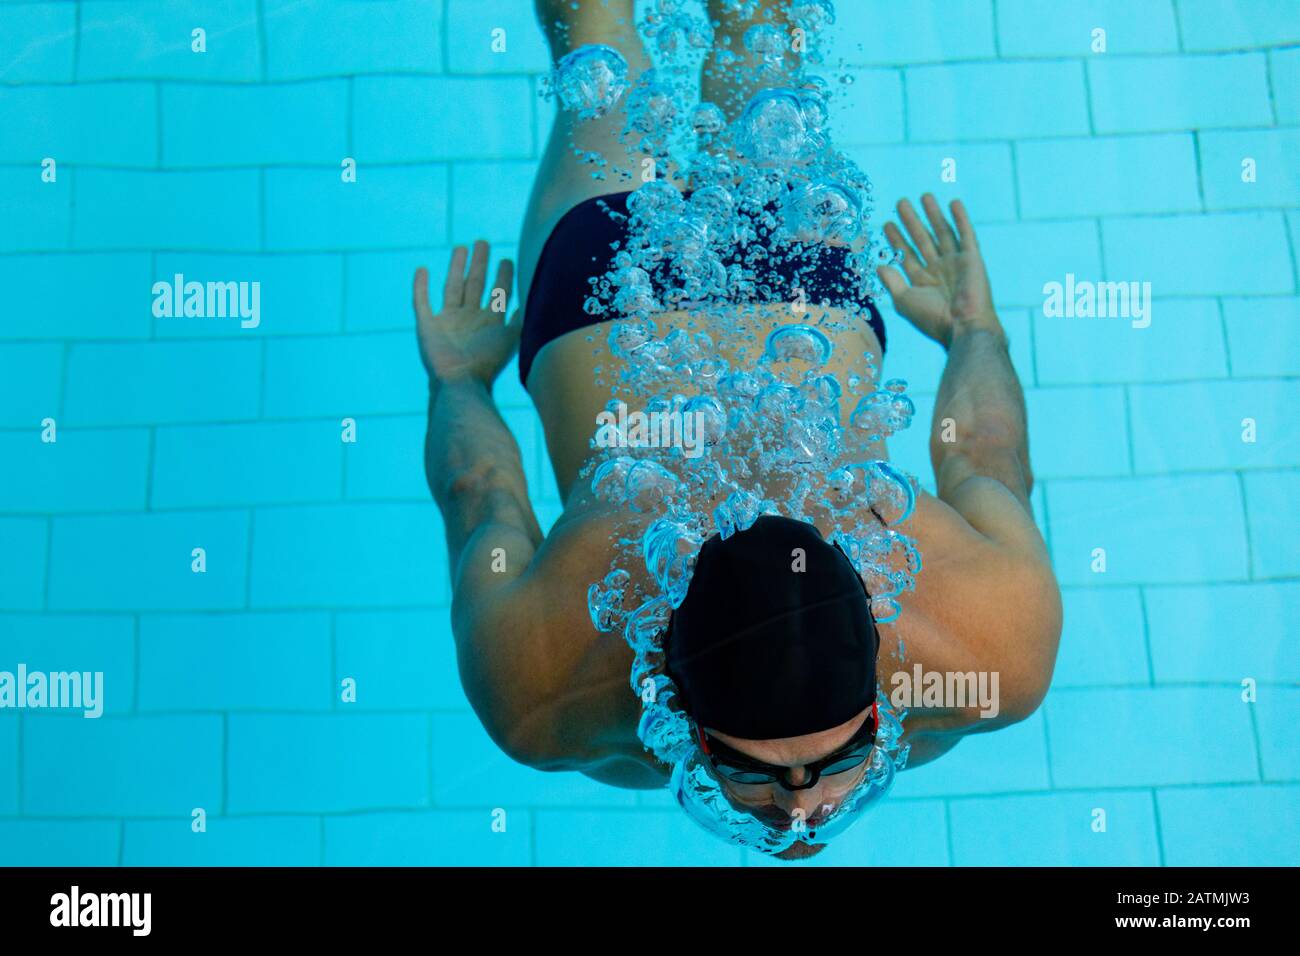 Nuotatore in acqua Foto Stock